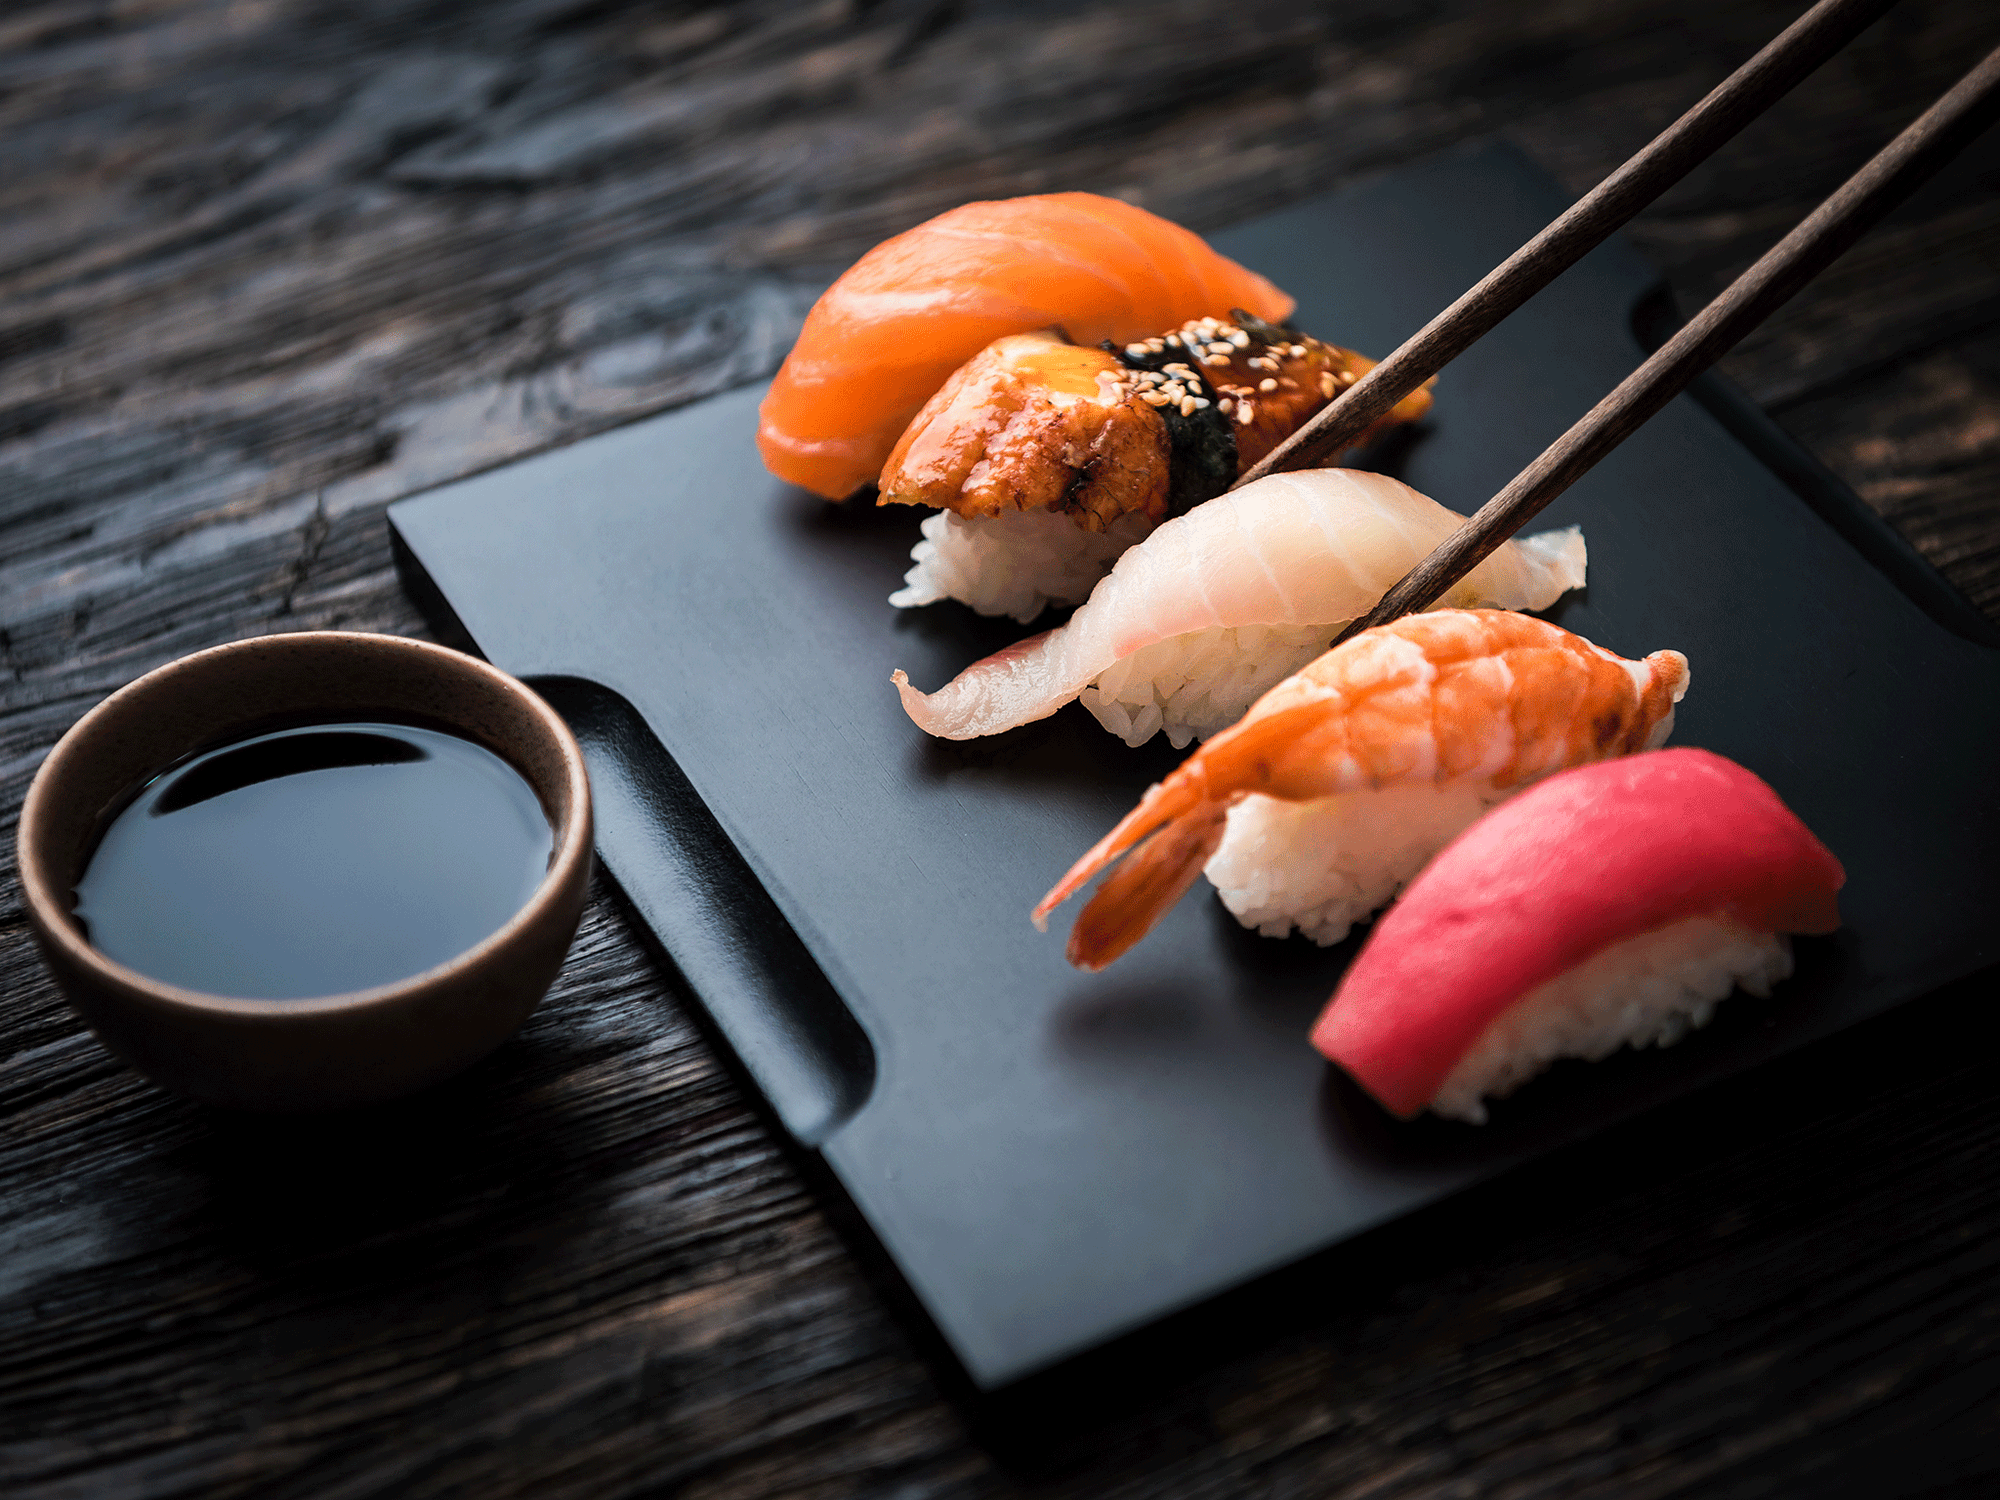 Tại sao người Nhật ăn cá sống mỗi ngày mà không sợ bị nhiễm ký sinh trùng ? - Ảnh 2.